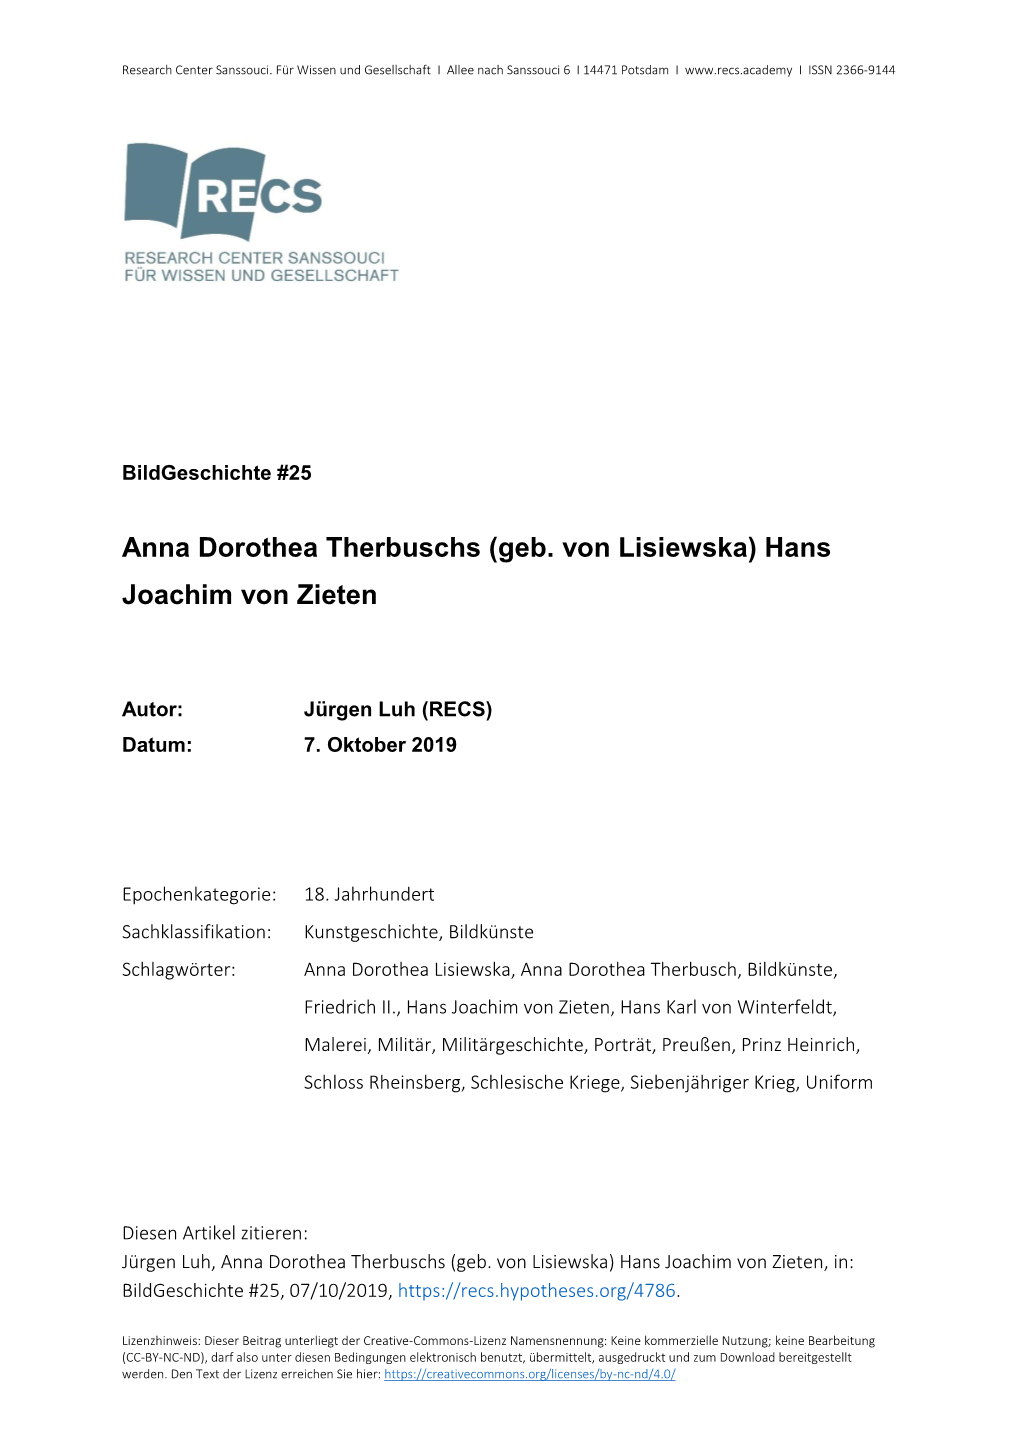 Anna Dorothea Therbuschs (Geb. Von Lisiewska) Hans Joachim Von Zieten